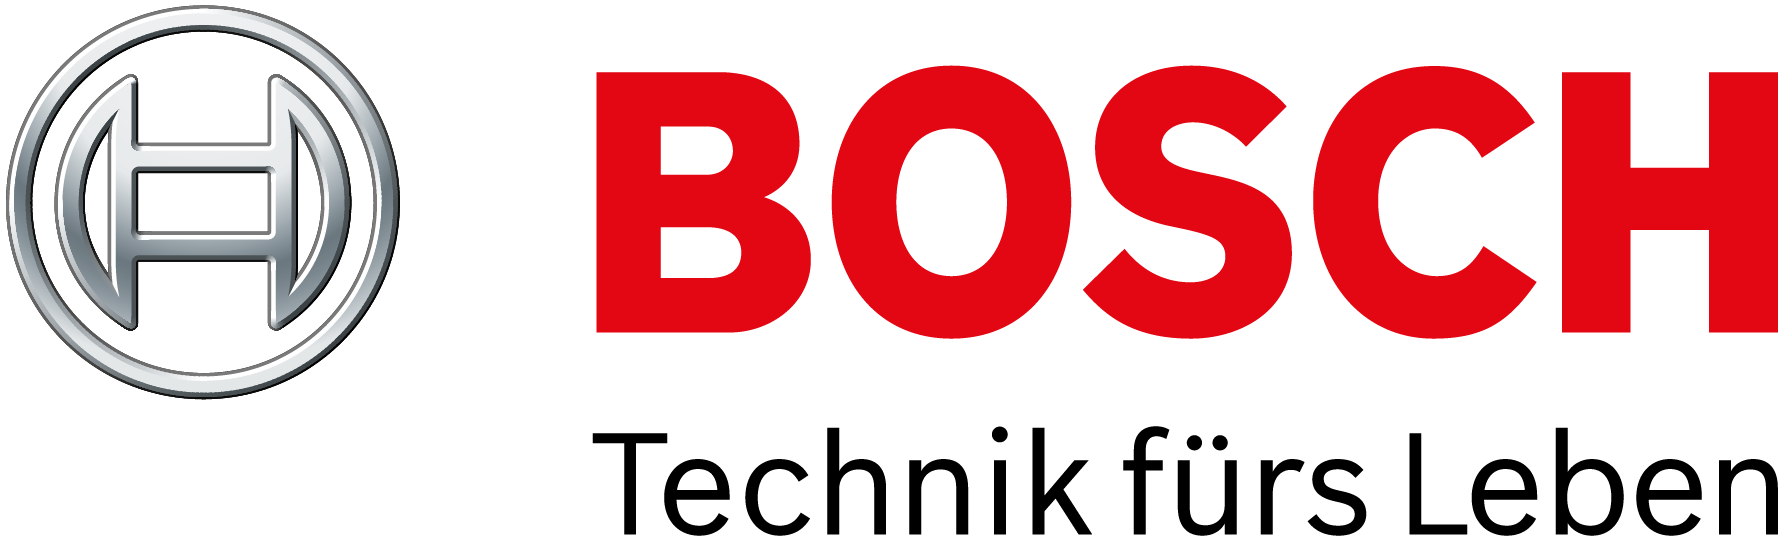 Robert Bosch GmbH - Bosch Corporate IT